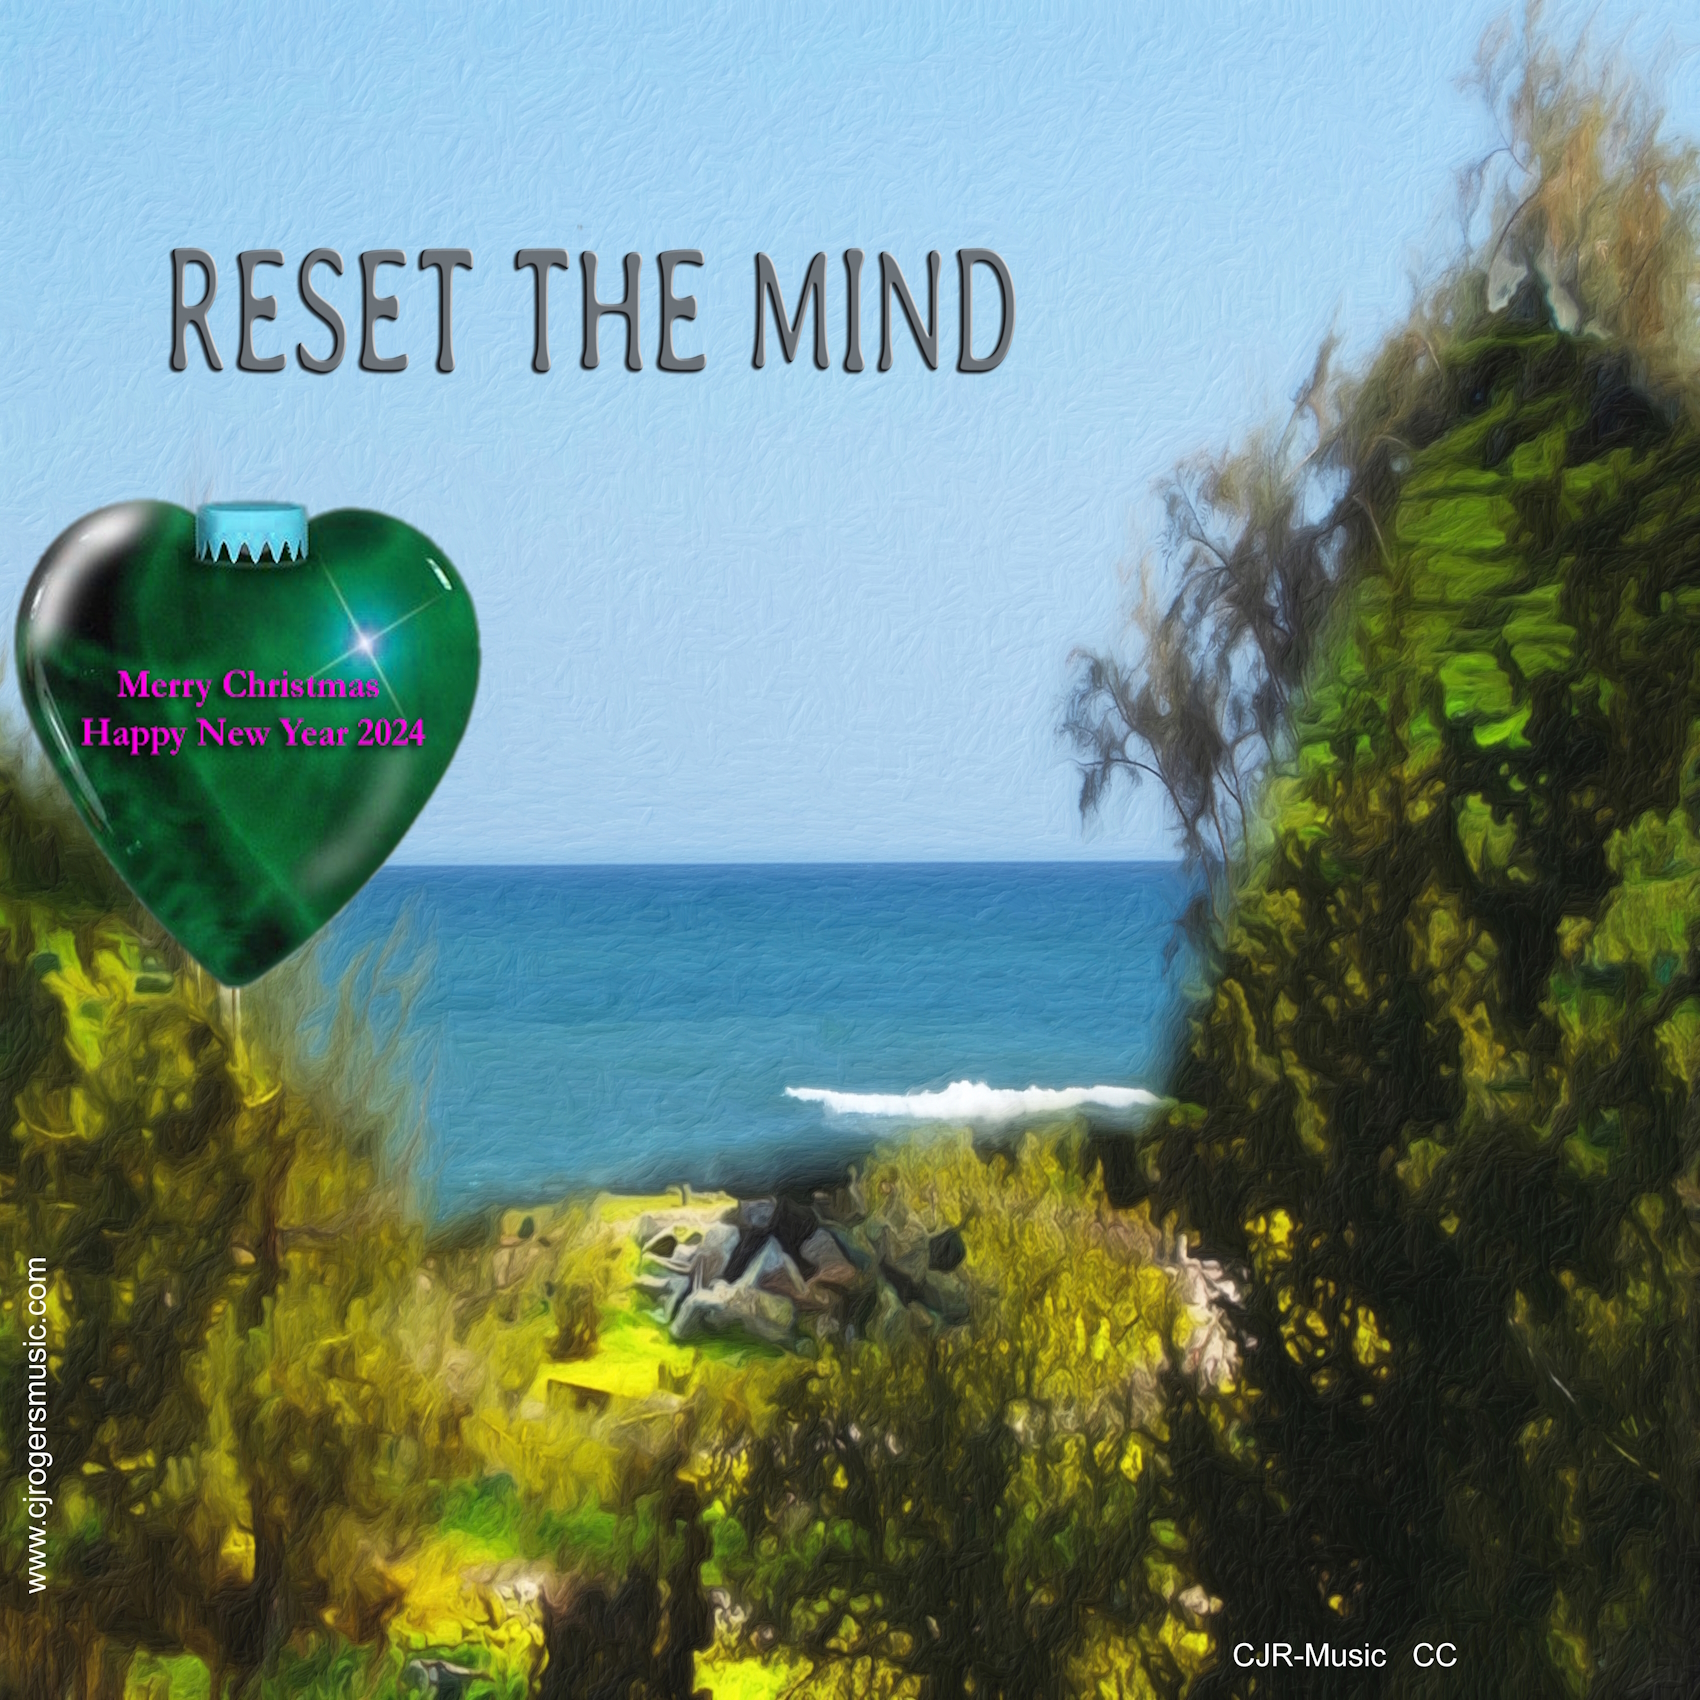 Reset the Mind - Fullsize Cover Art